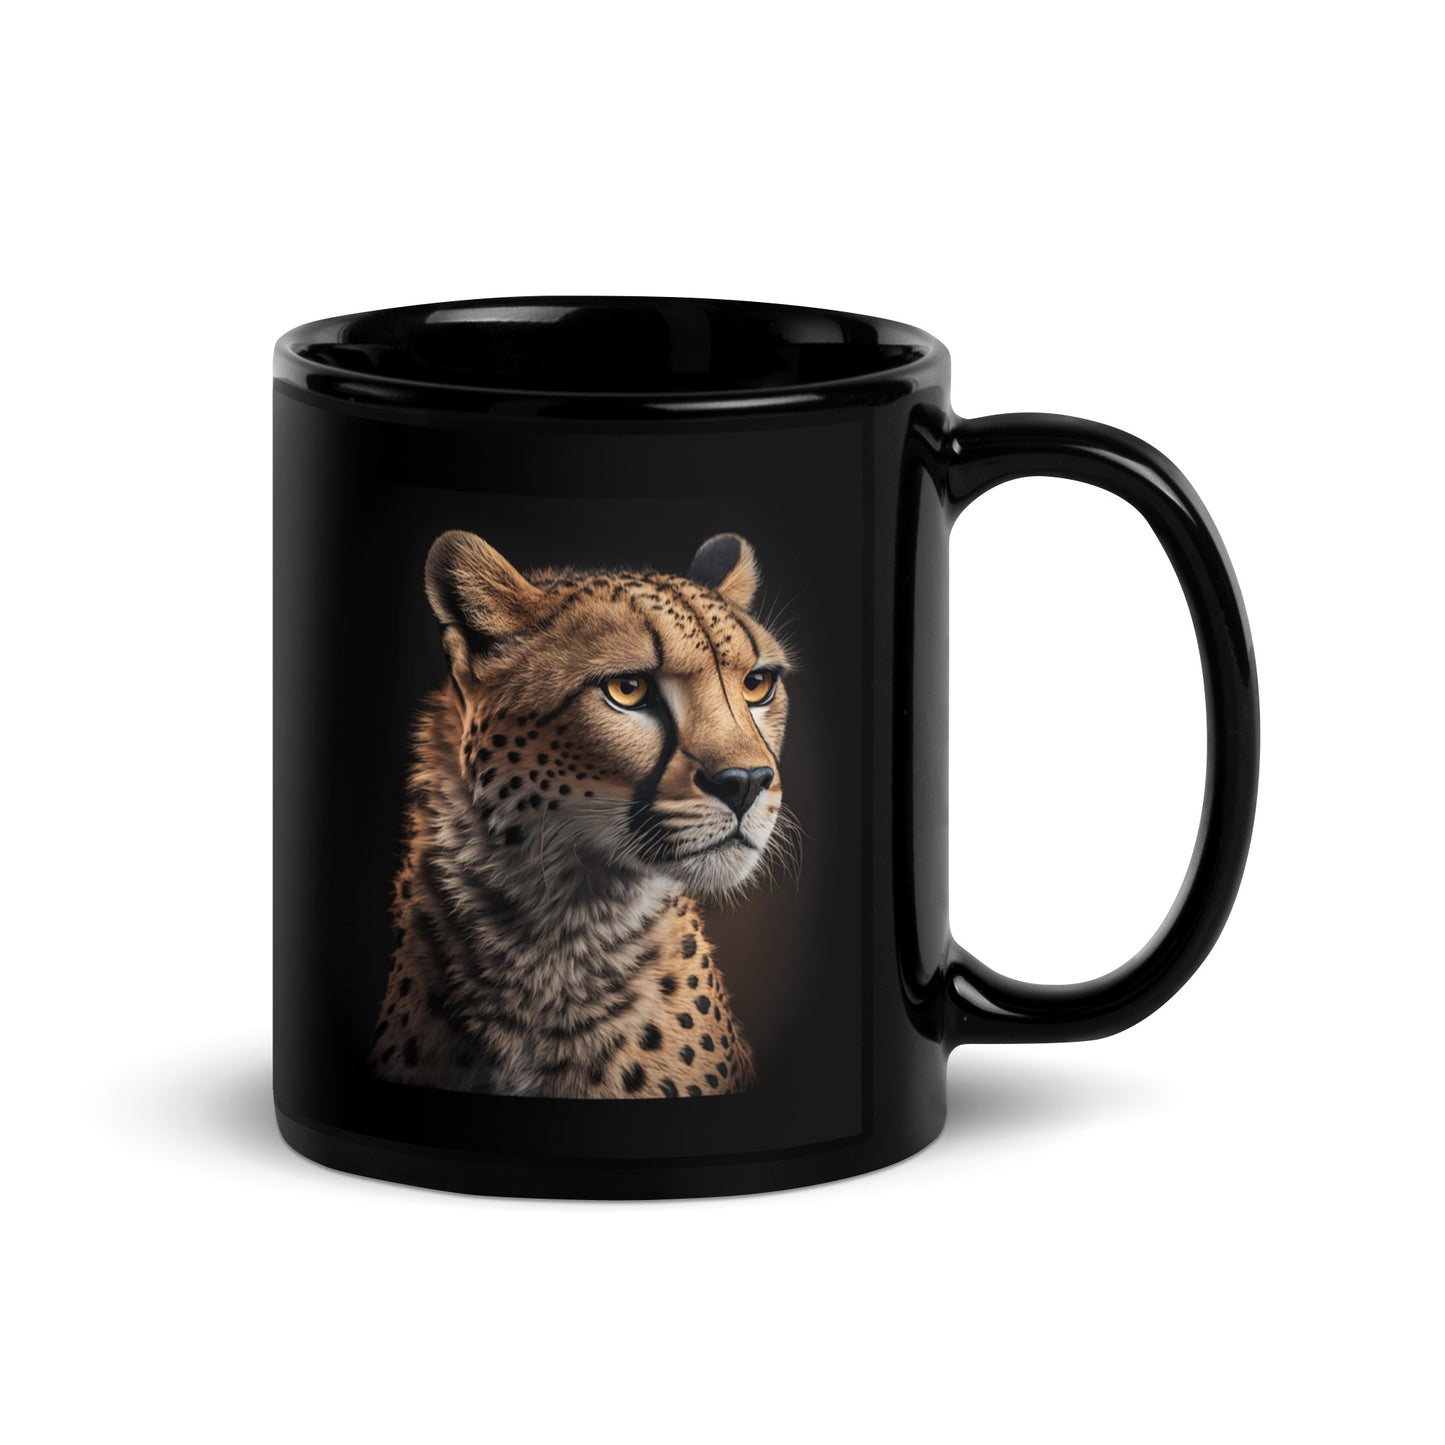 Black Glossy Mug printed with a cheetah